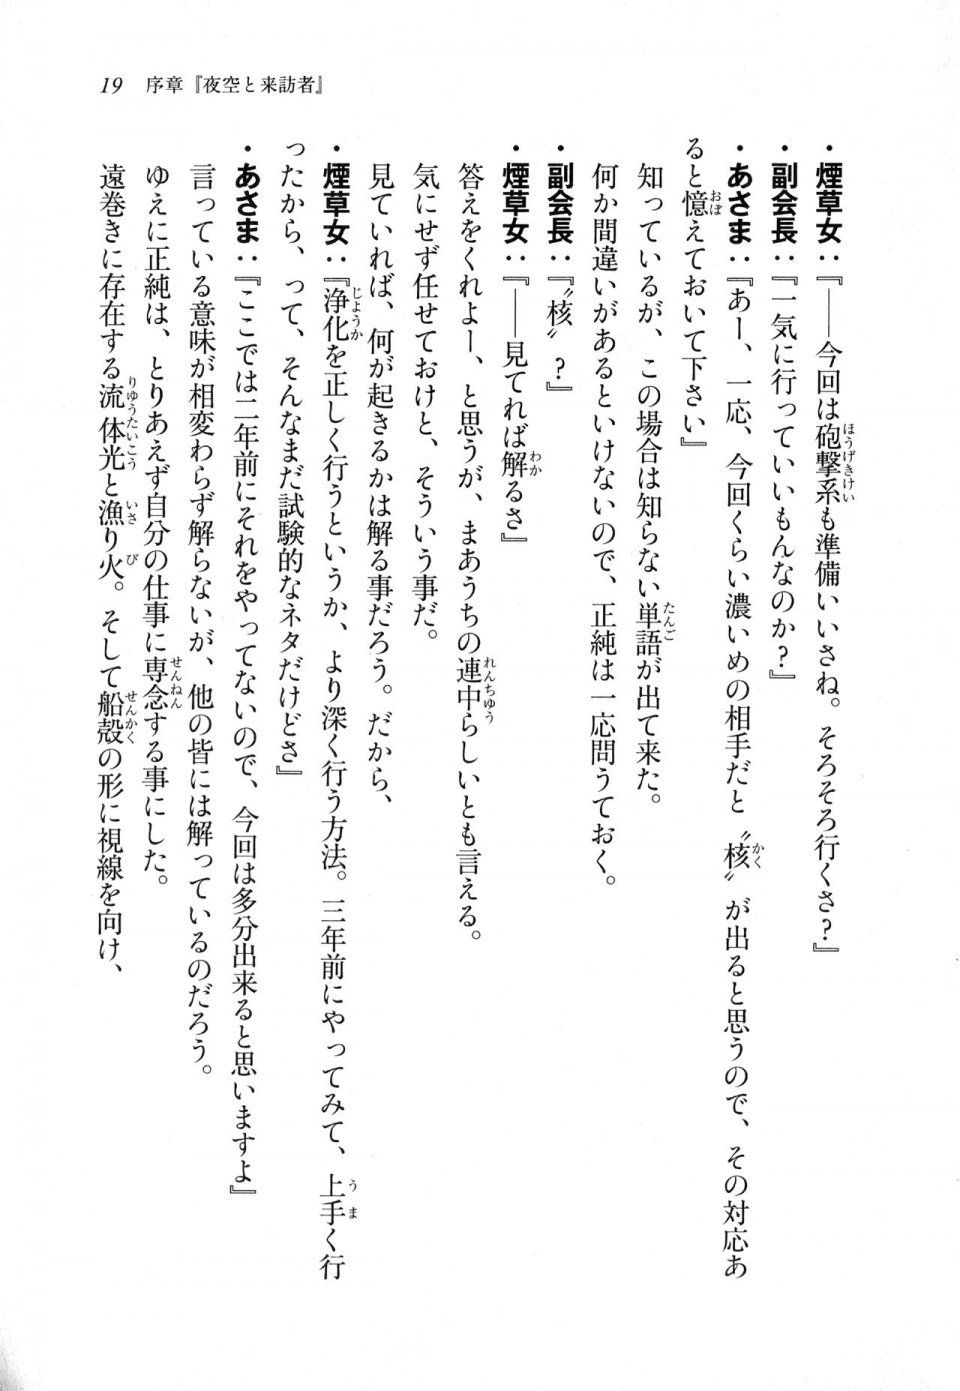 Kyoukai Senjou no Horizon LN Sidestory Vol 1 - Photo #18